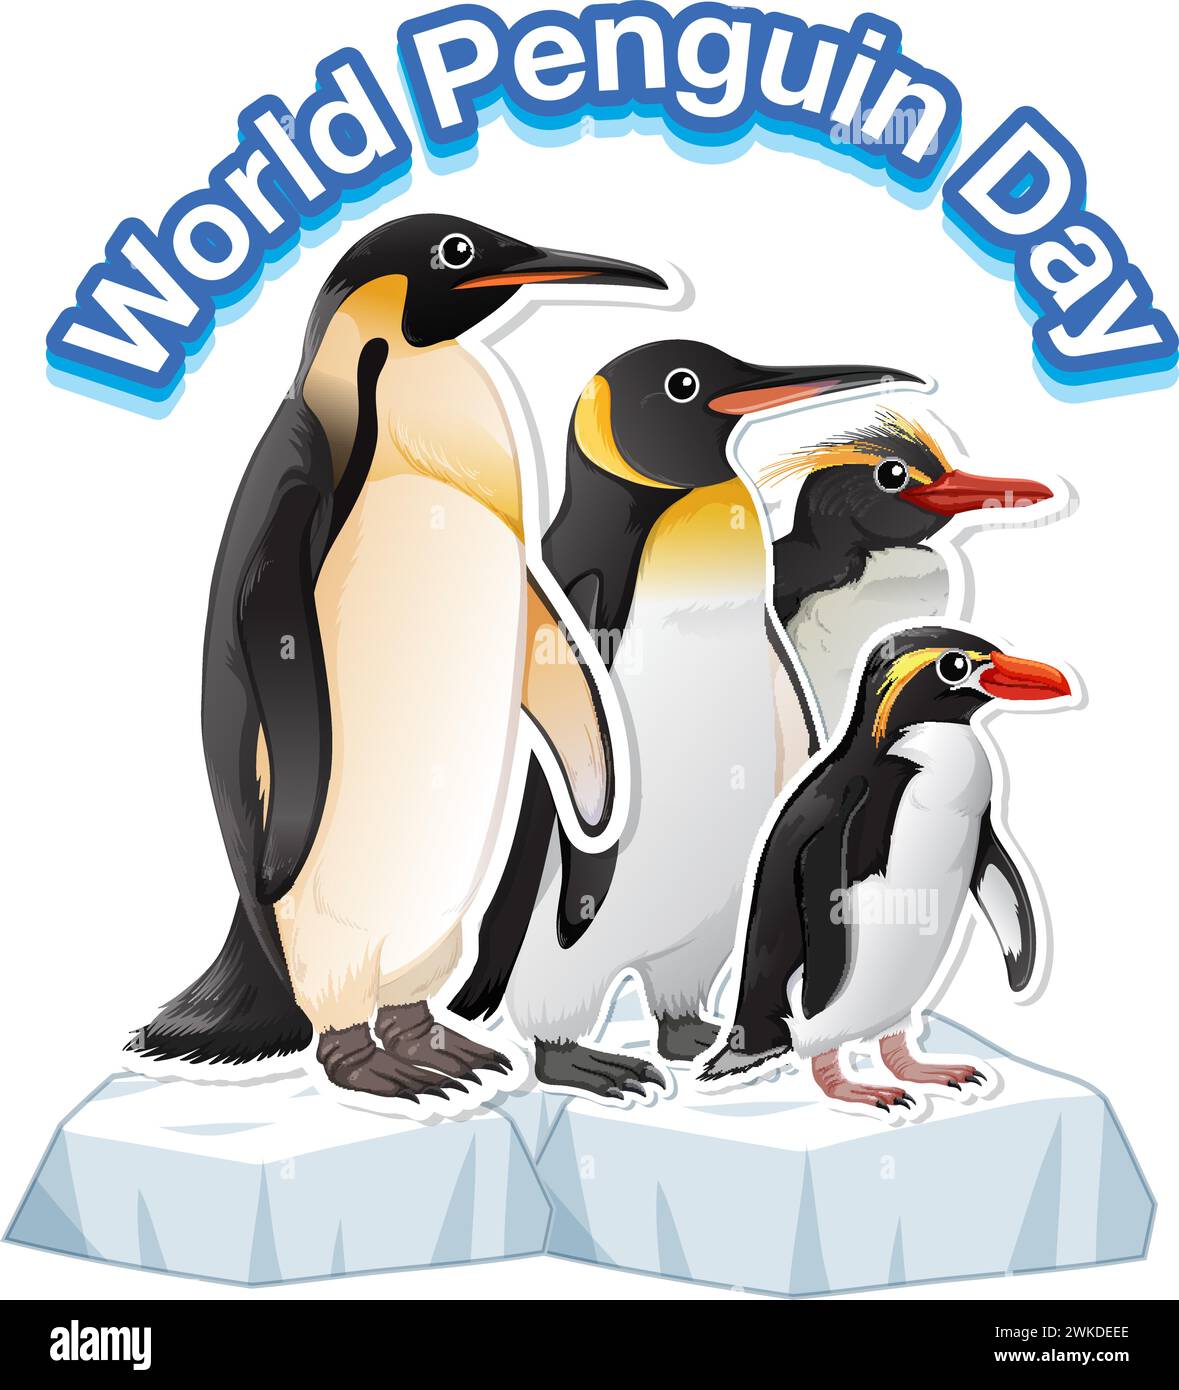 Vecteur coloré de pingouins commémorant leur jour spécial Illustration de Vecteur